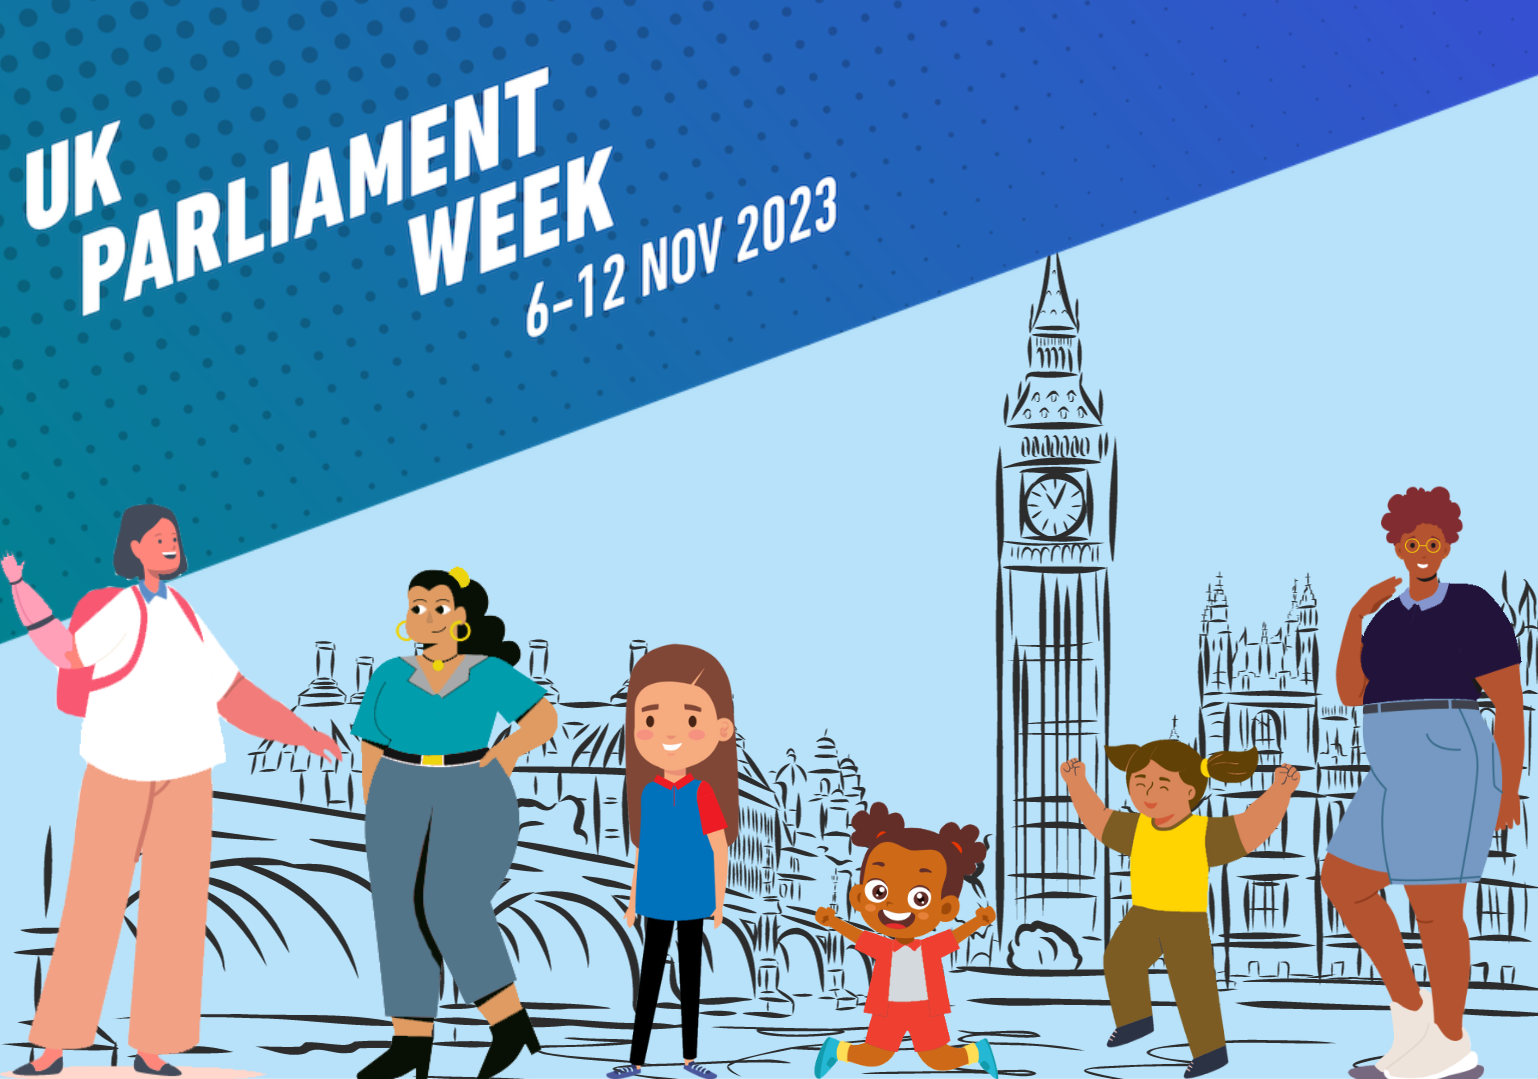 image relating to UK Parliament Week Partnership